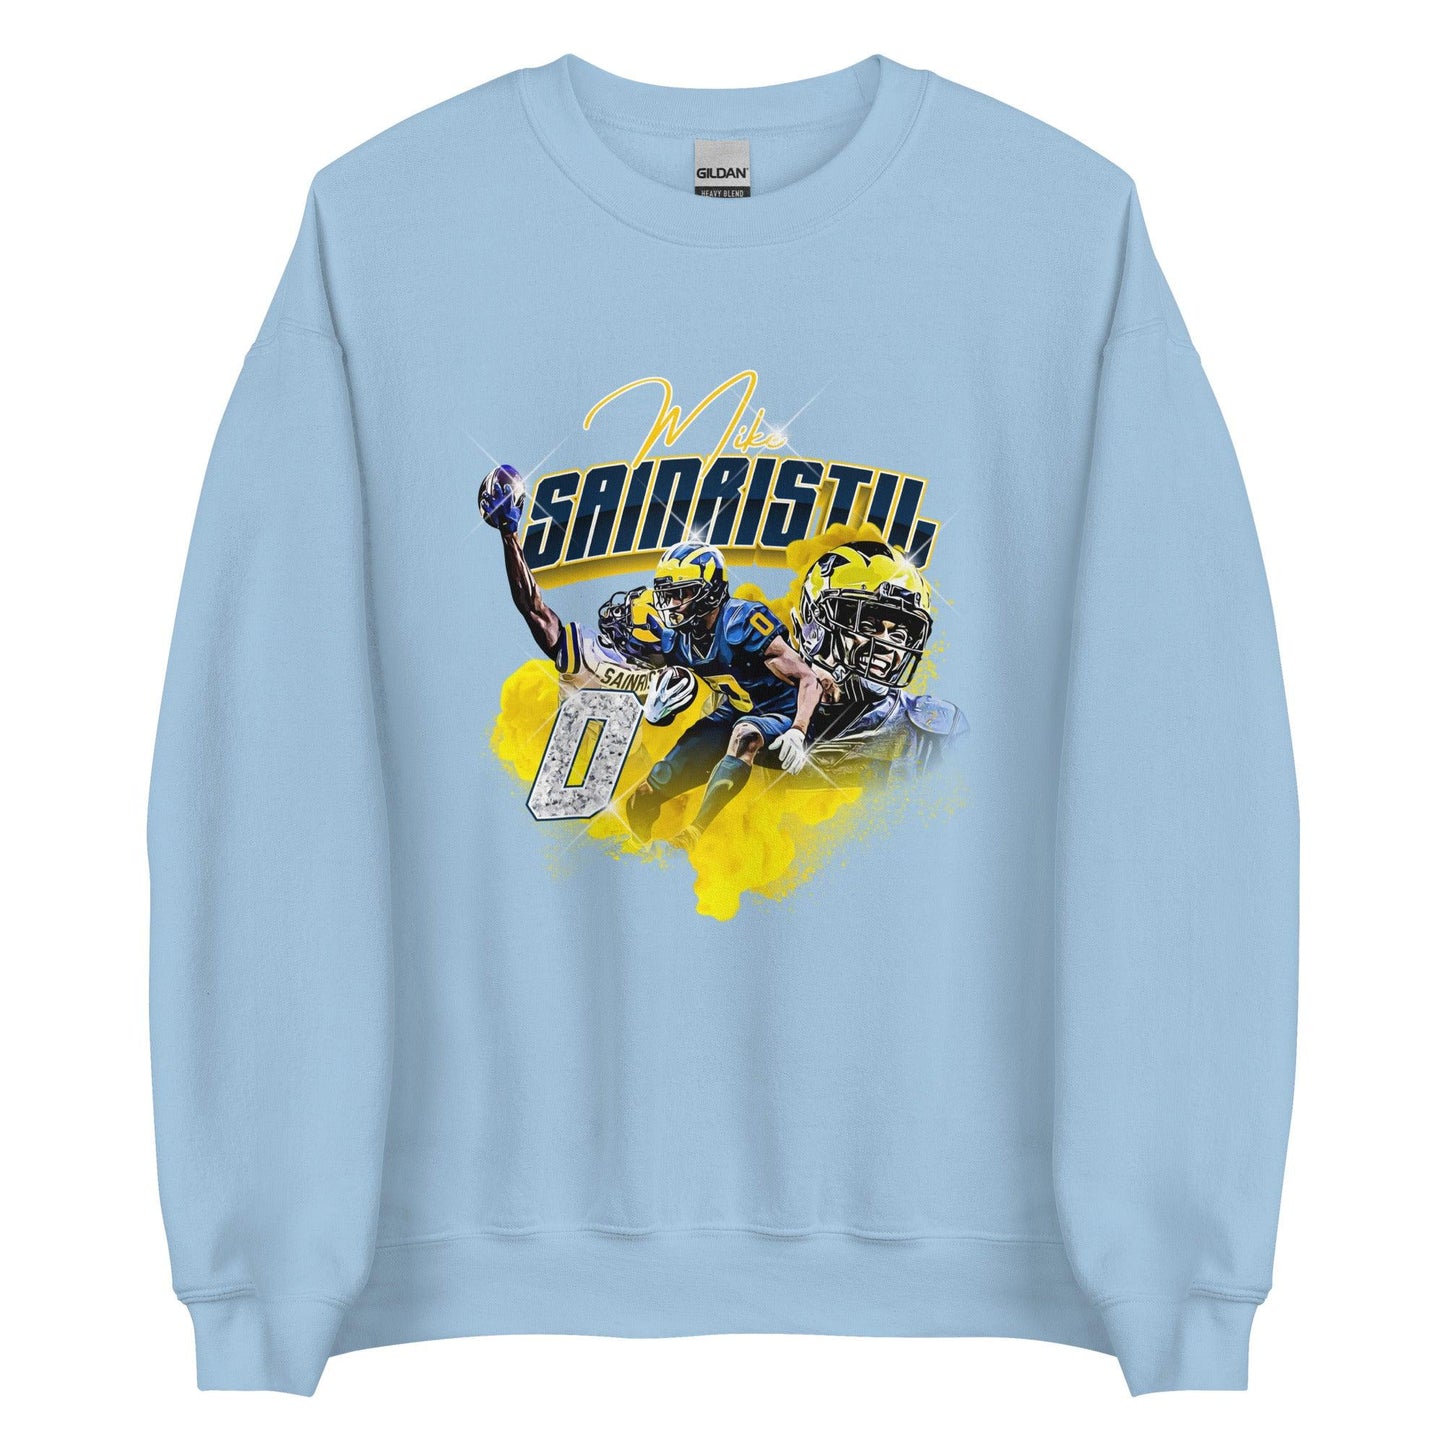 Mike Sainristil "Limited Edition" Sweatshirt - Fan Arch